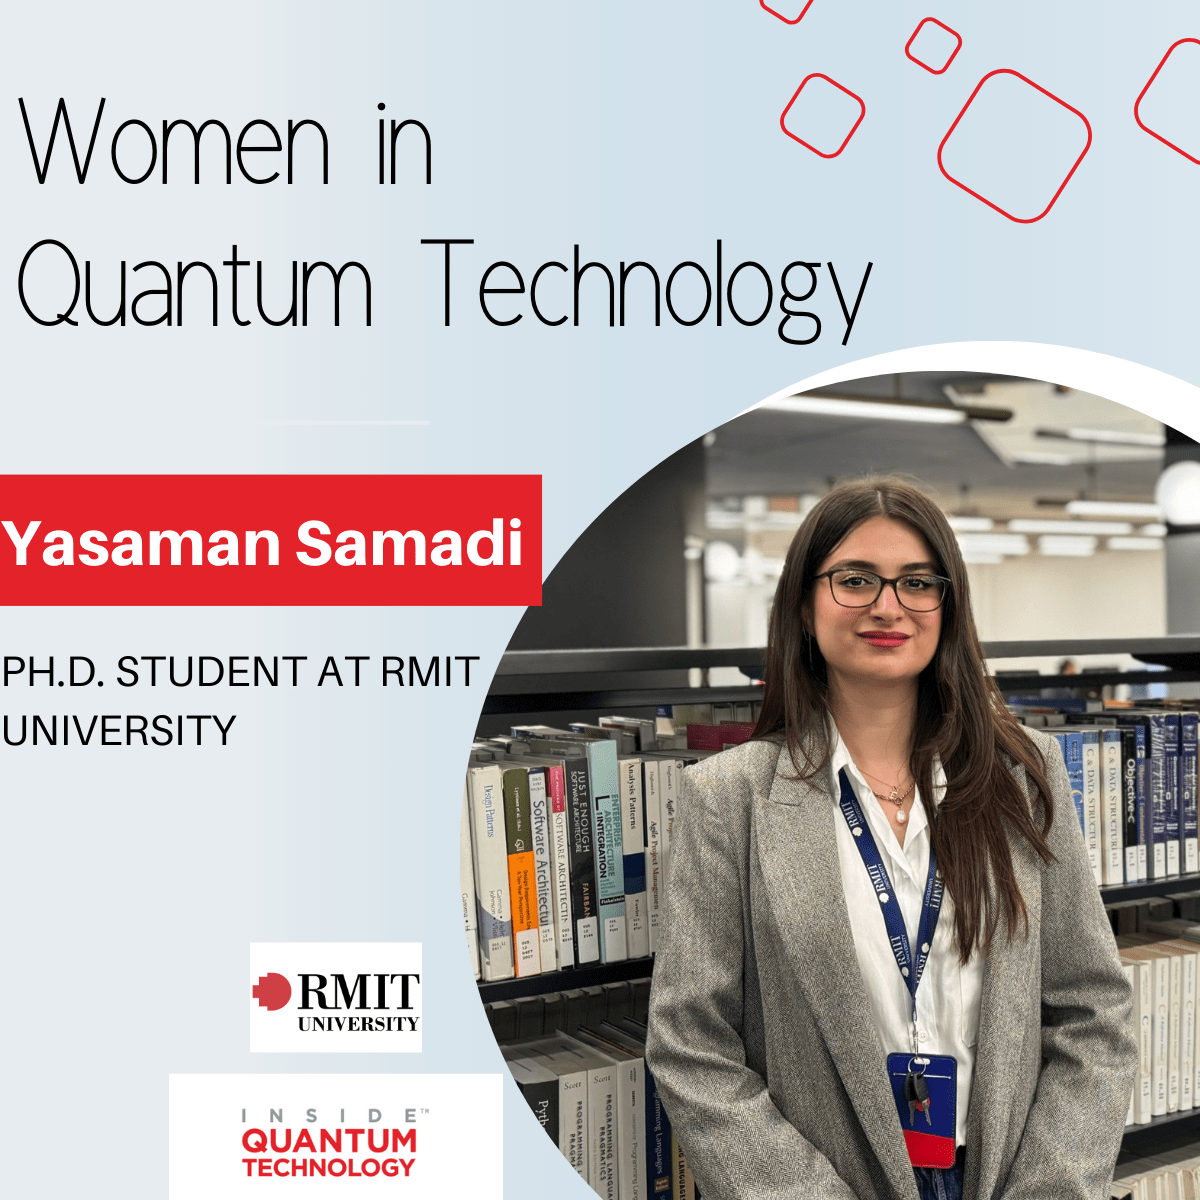 Yasaman Samadi, Ph.D. Estudiante de la Universidad RMIT, comparte su pasión por la computación cuántica y la ciberseguridad.